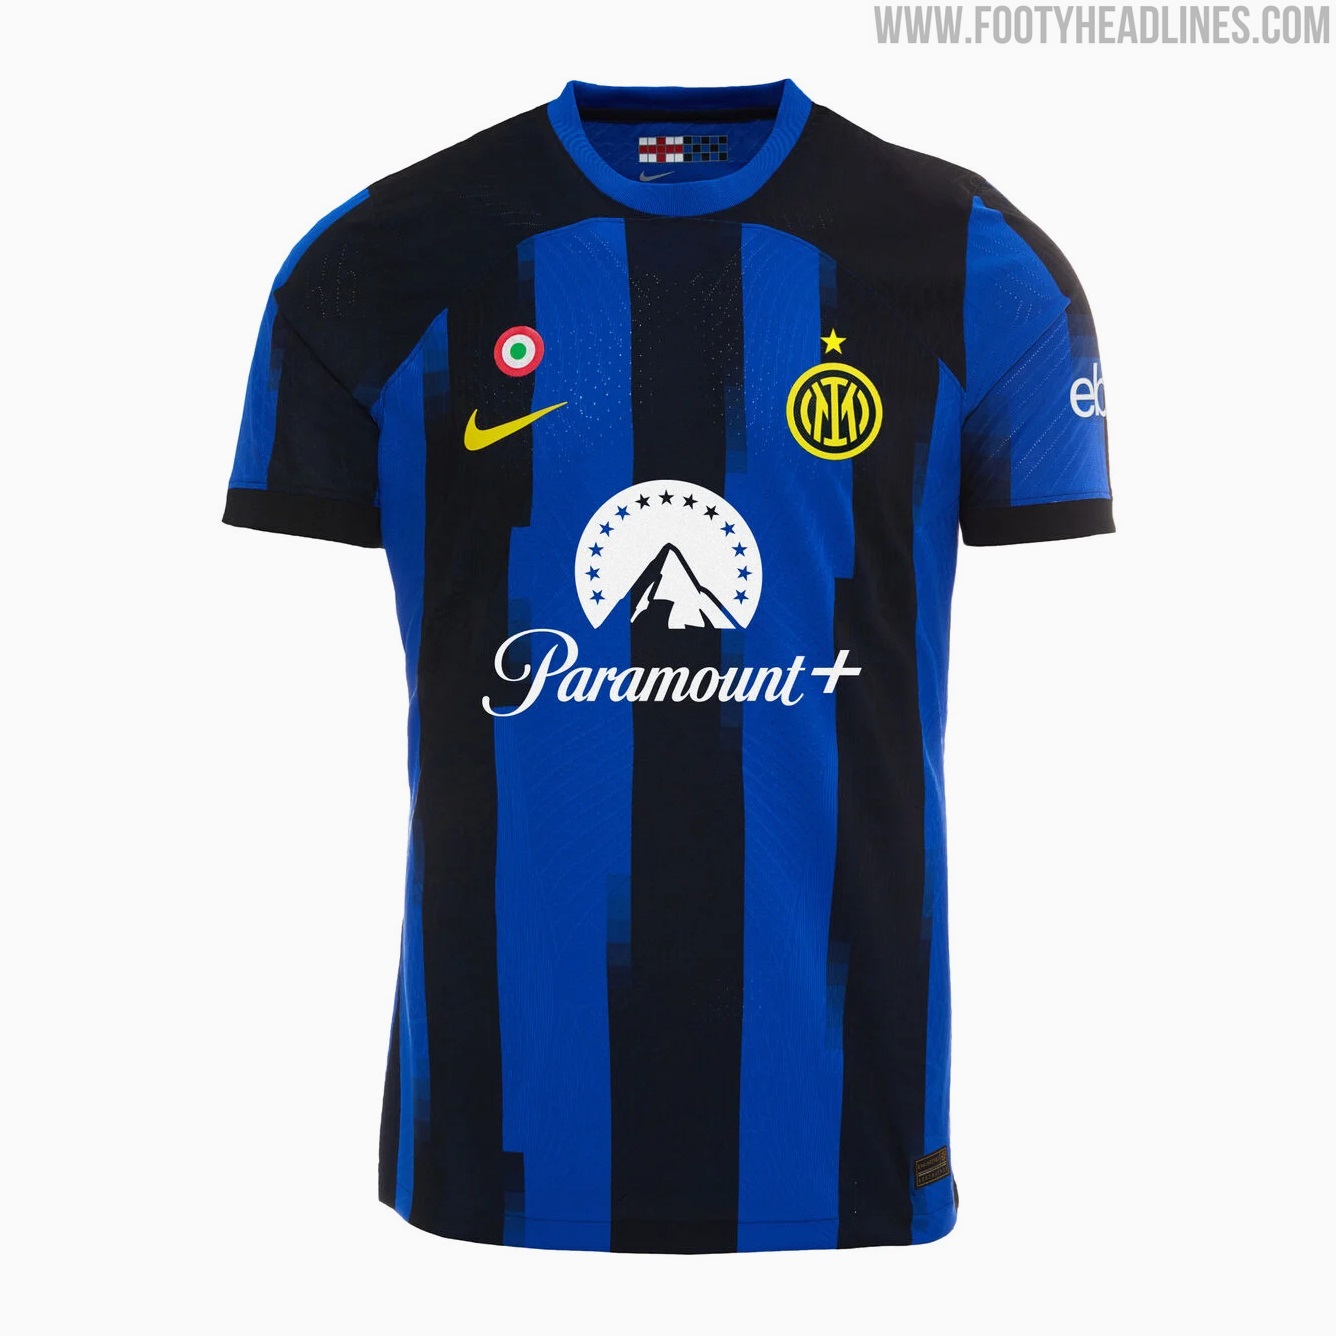 Inter Milan 23-24 Home Kit Released + Away Kit Leaked - Footy Headlines